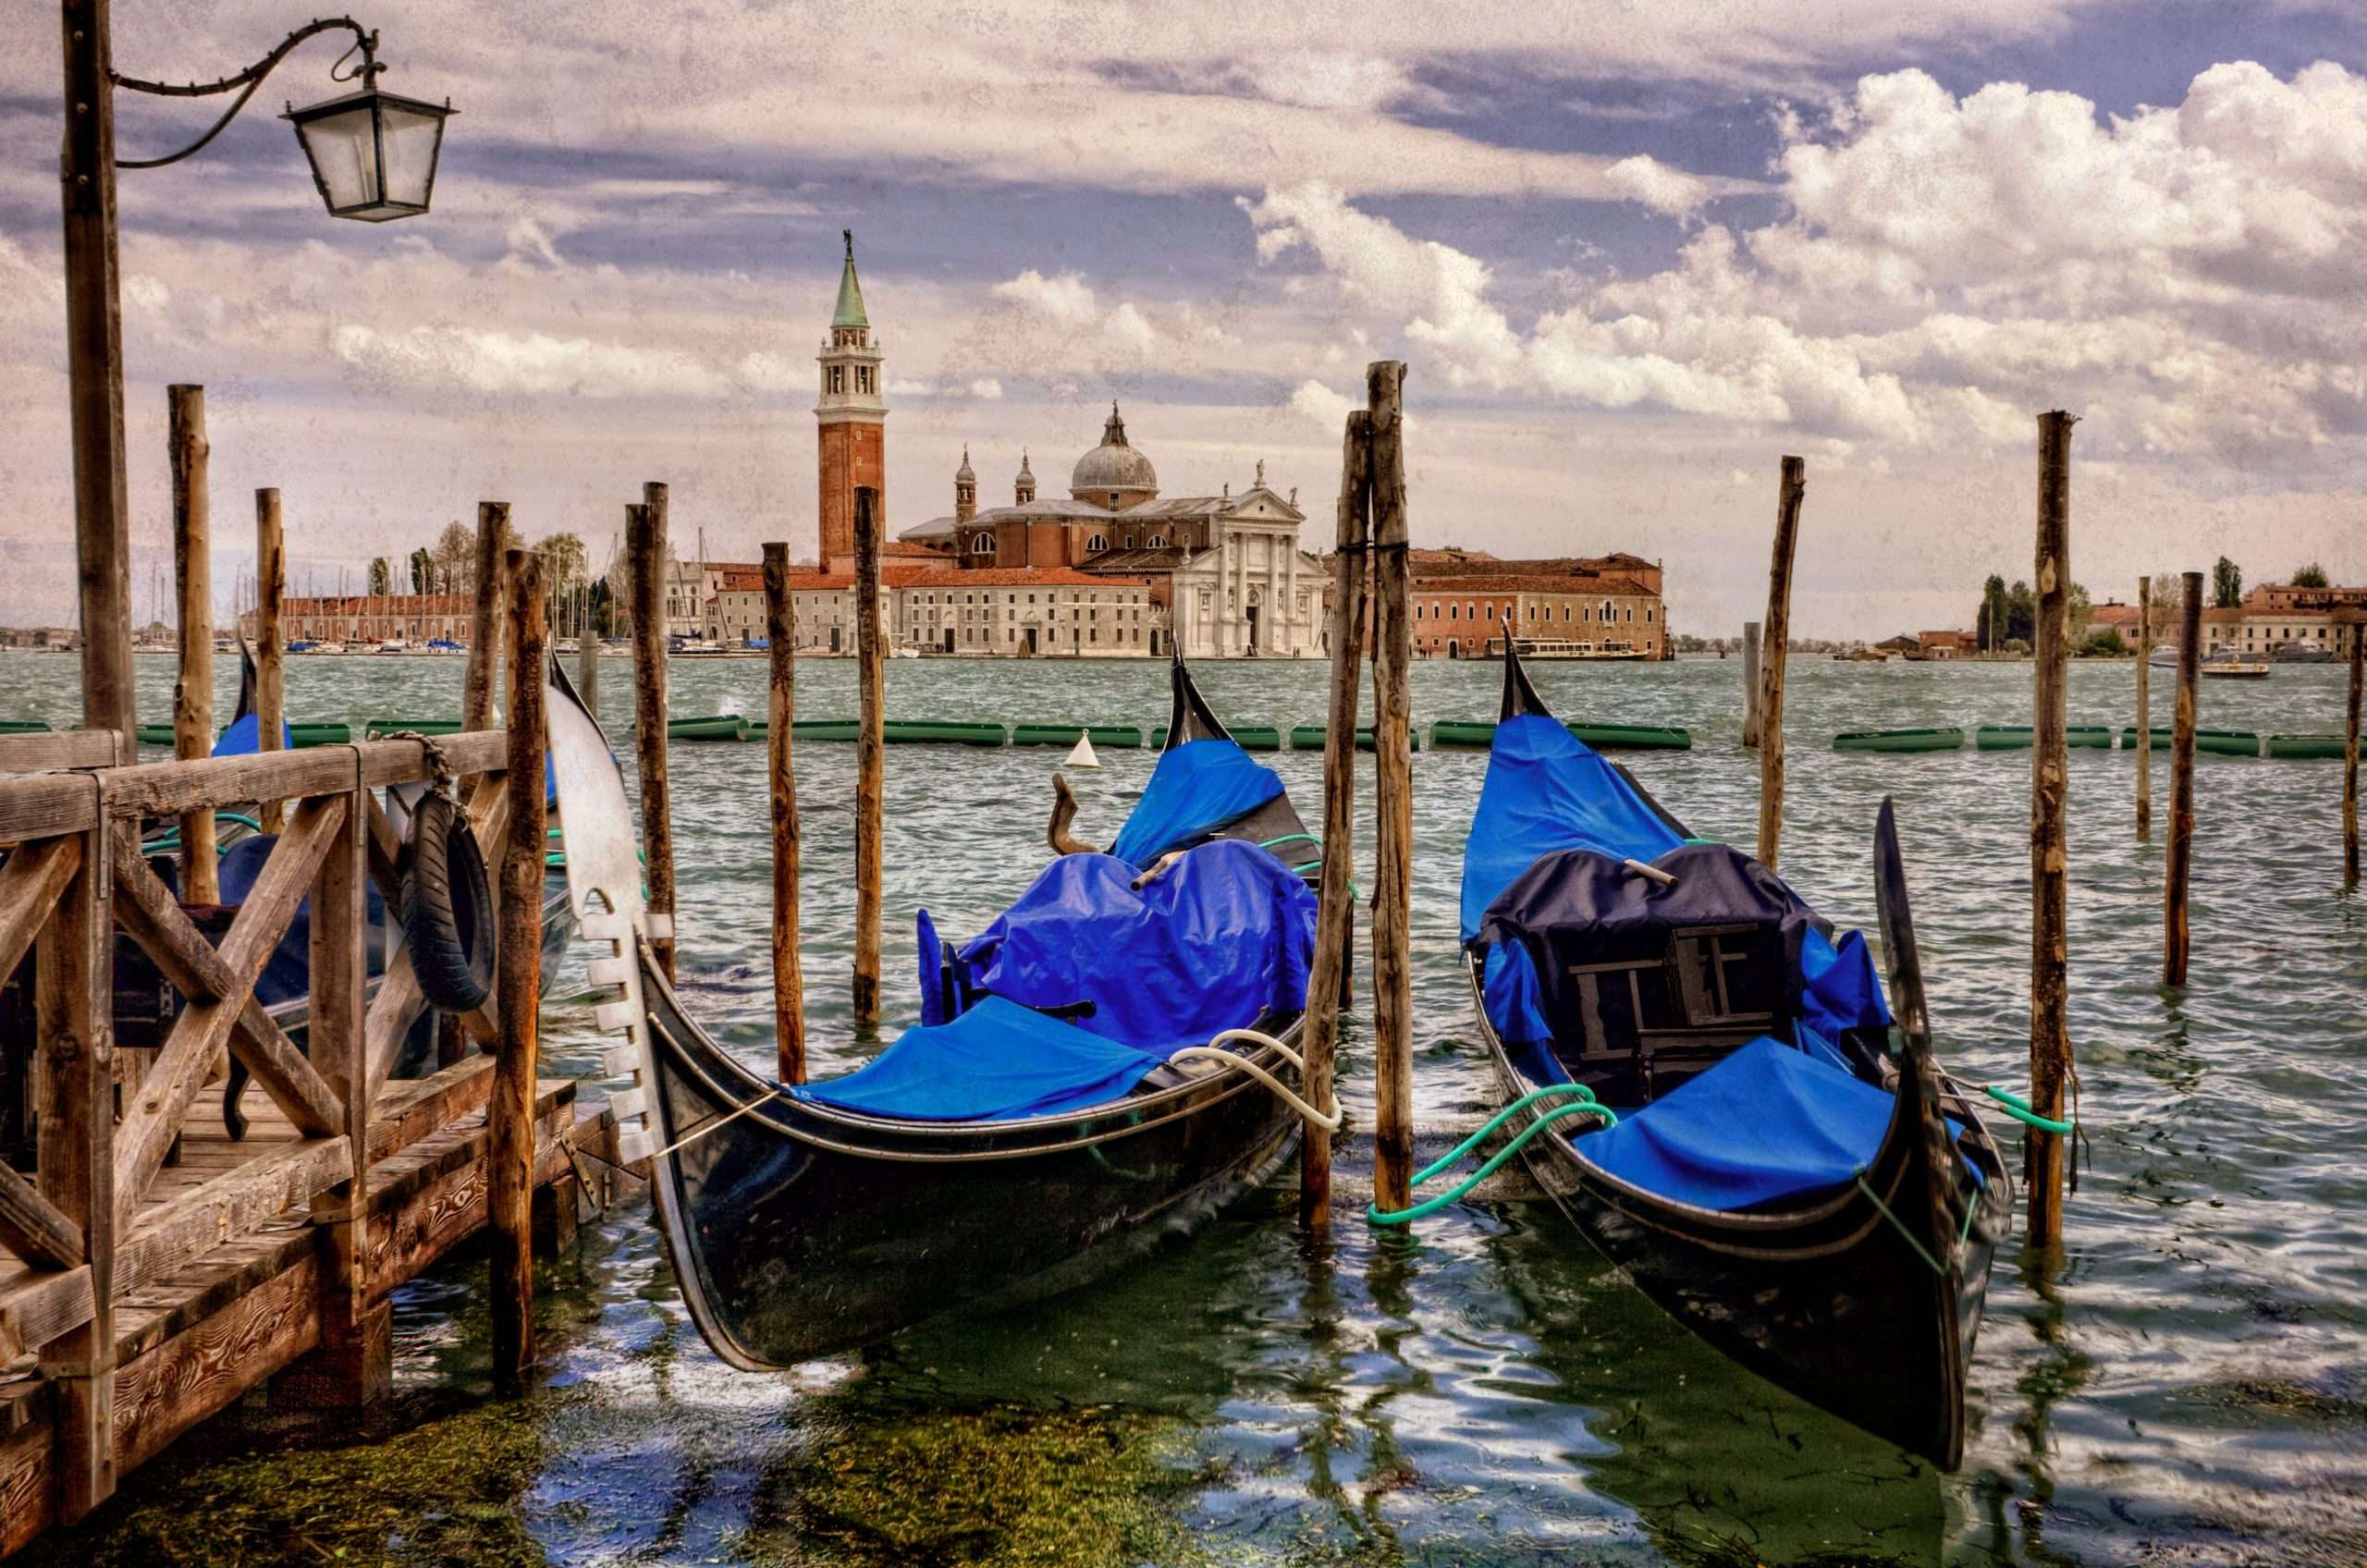 gondola transporte en venecia